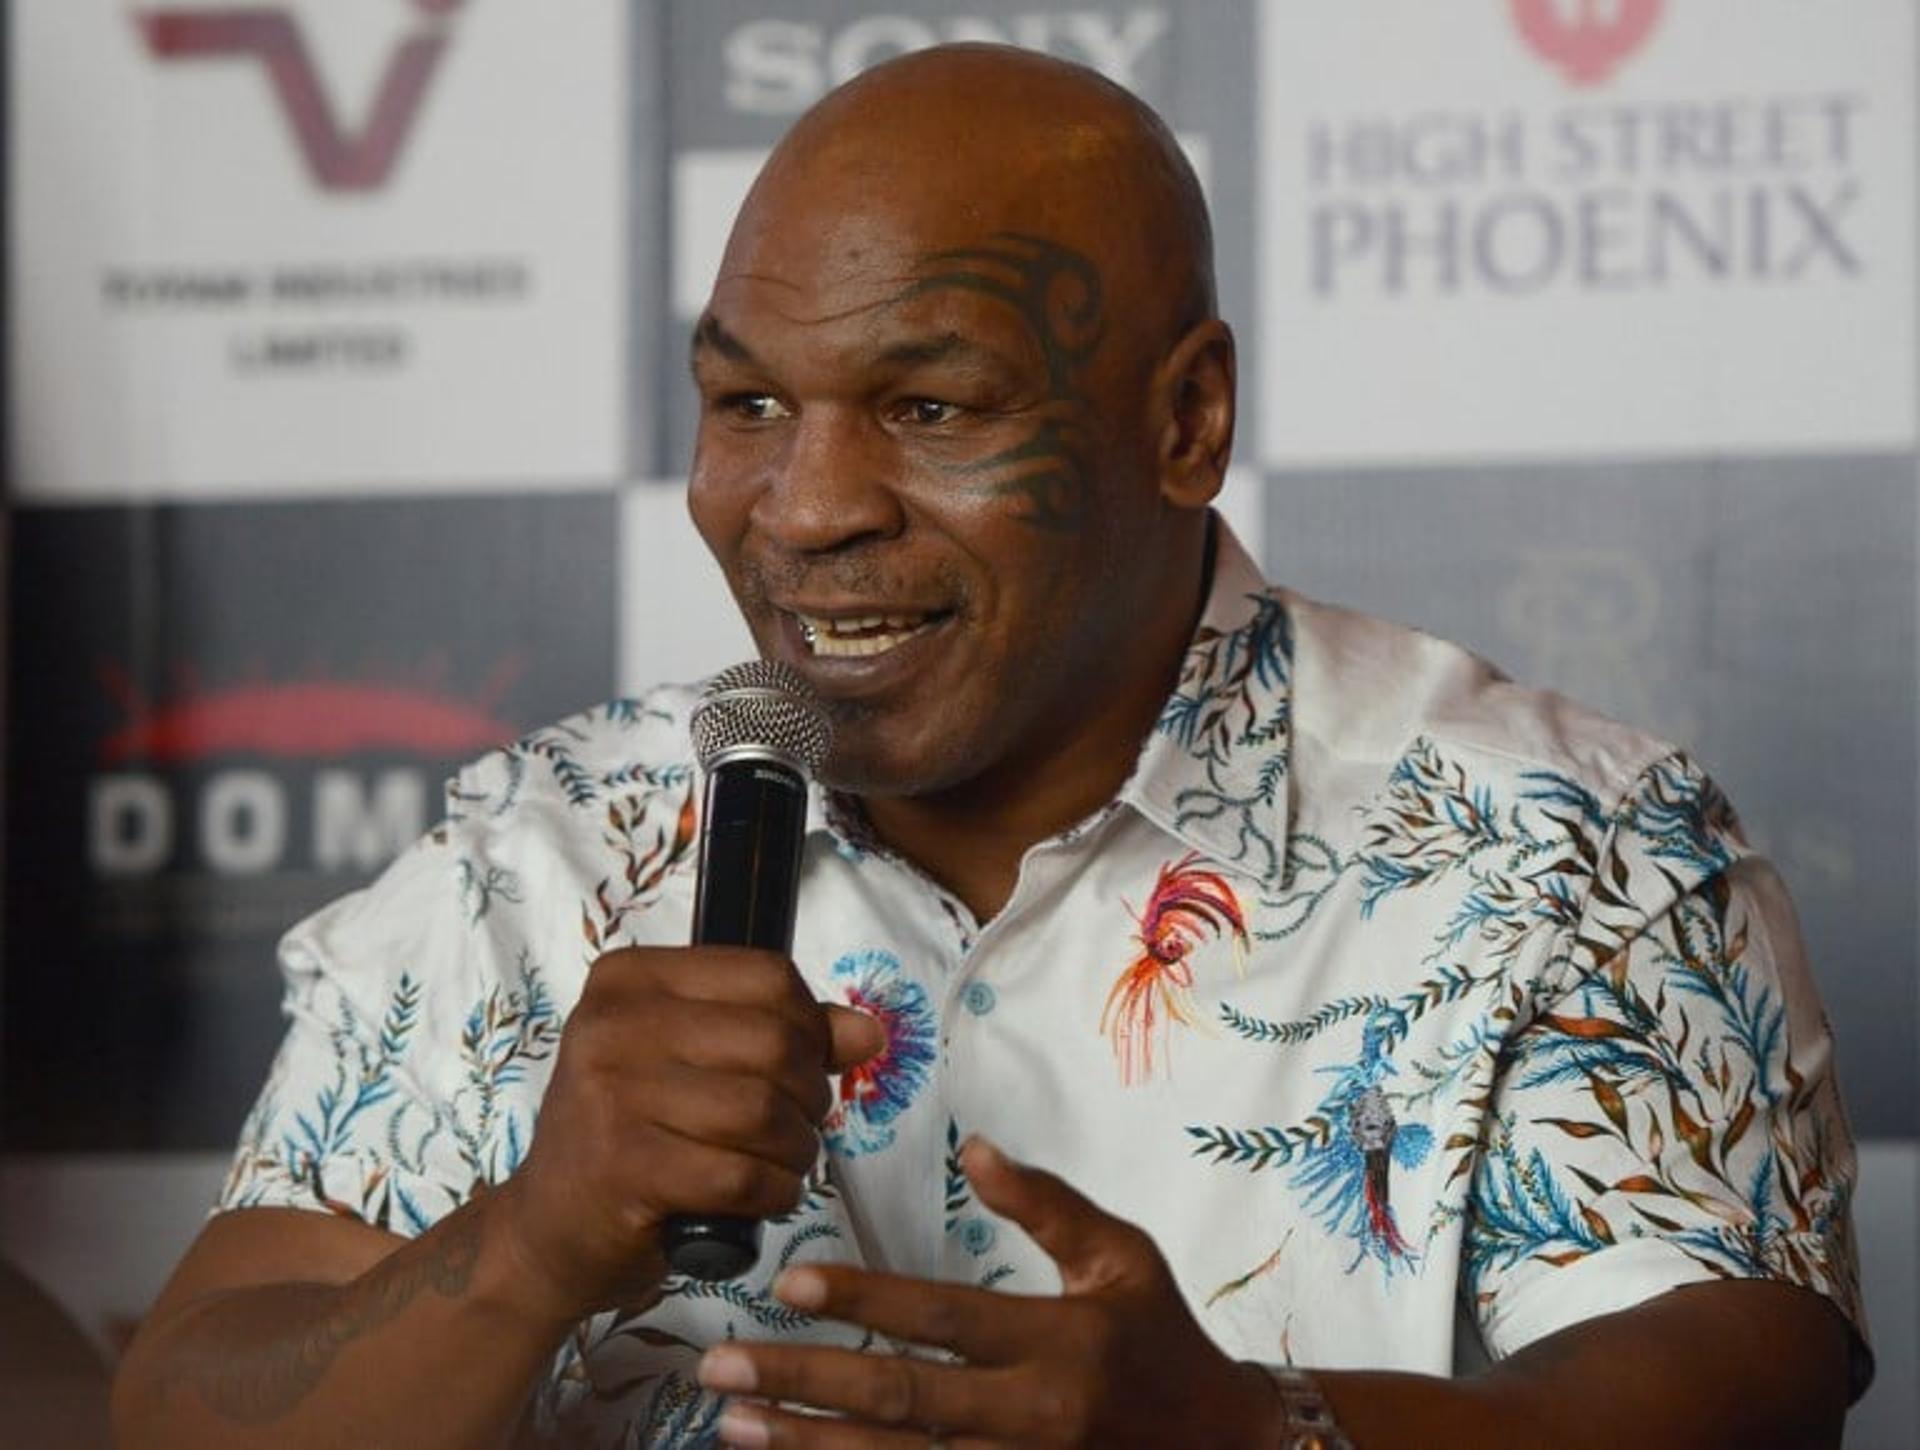 O ex-boxeador Mike Tyson foi acusado de estuprar uma das participantes do concurso Miss América. Ele foi condenado a seis anos de prisão